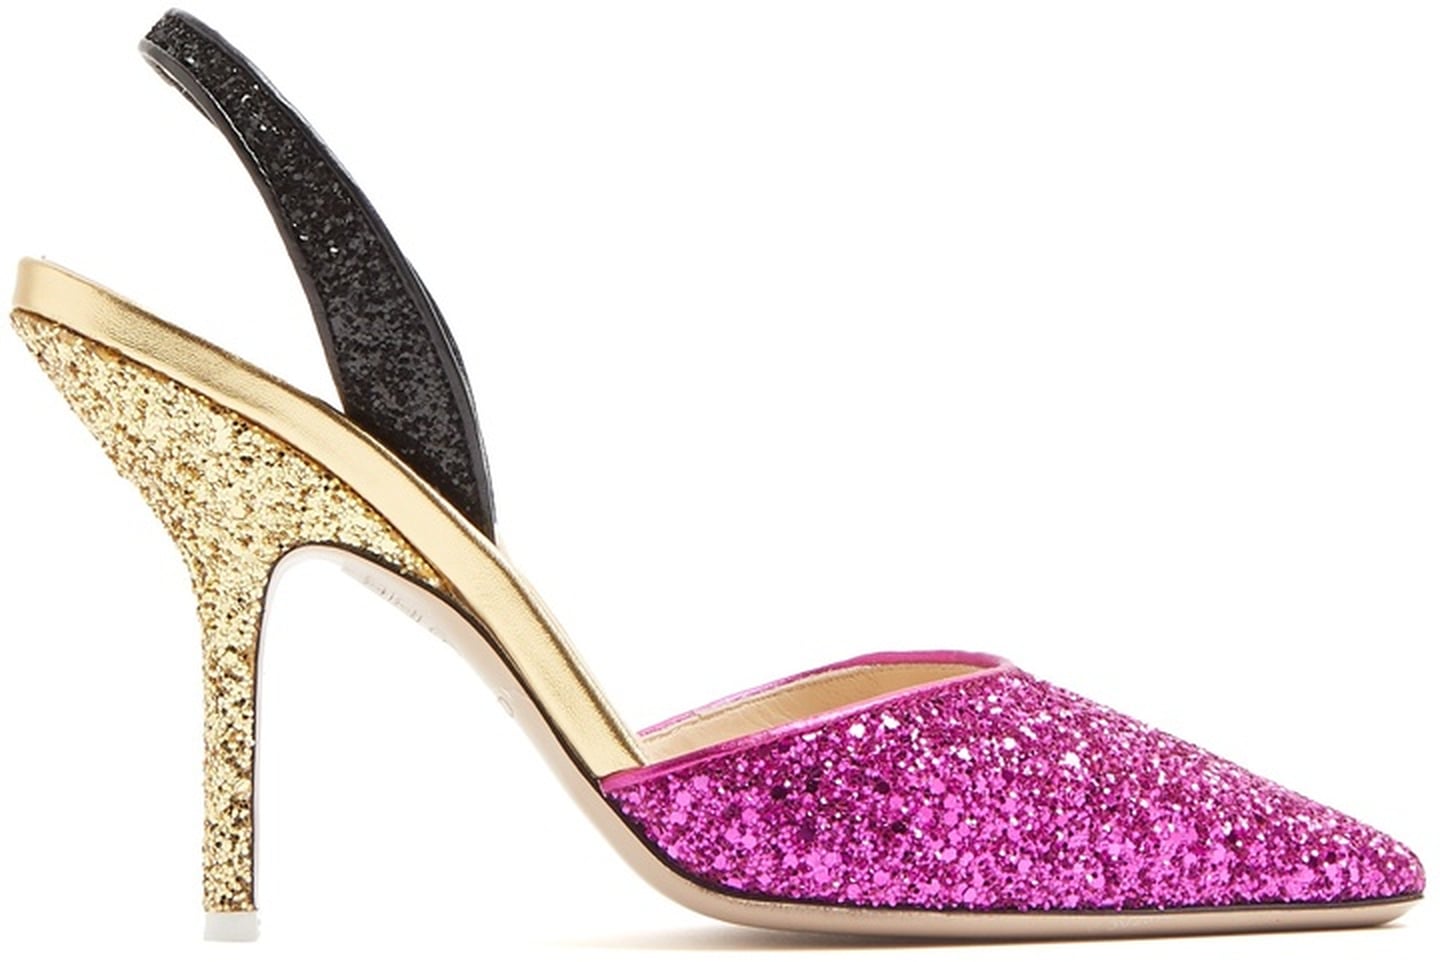 Gigi Hadid's Pink Prada Shoes | POPSUGAR Fashion